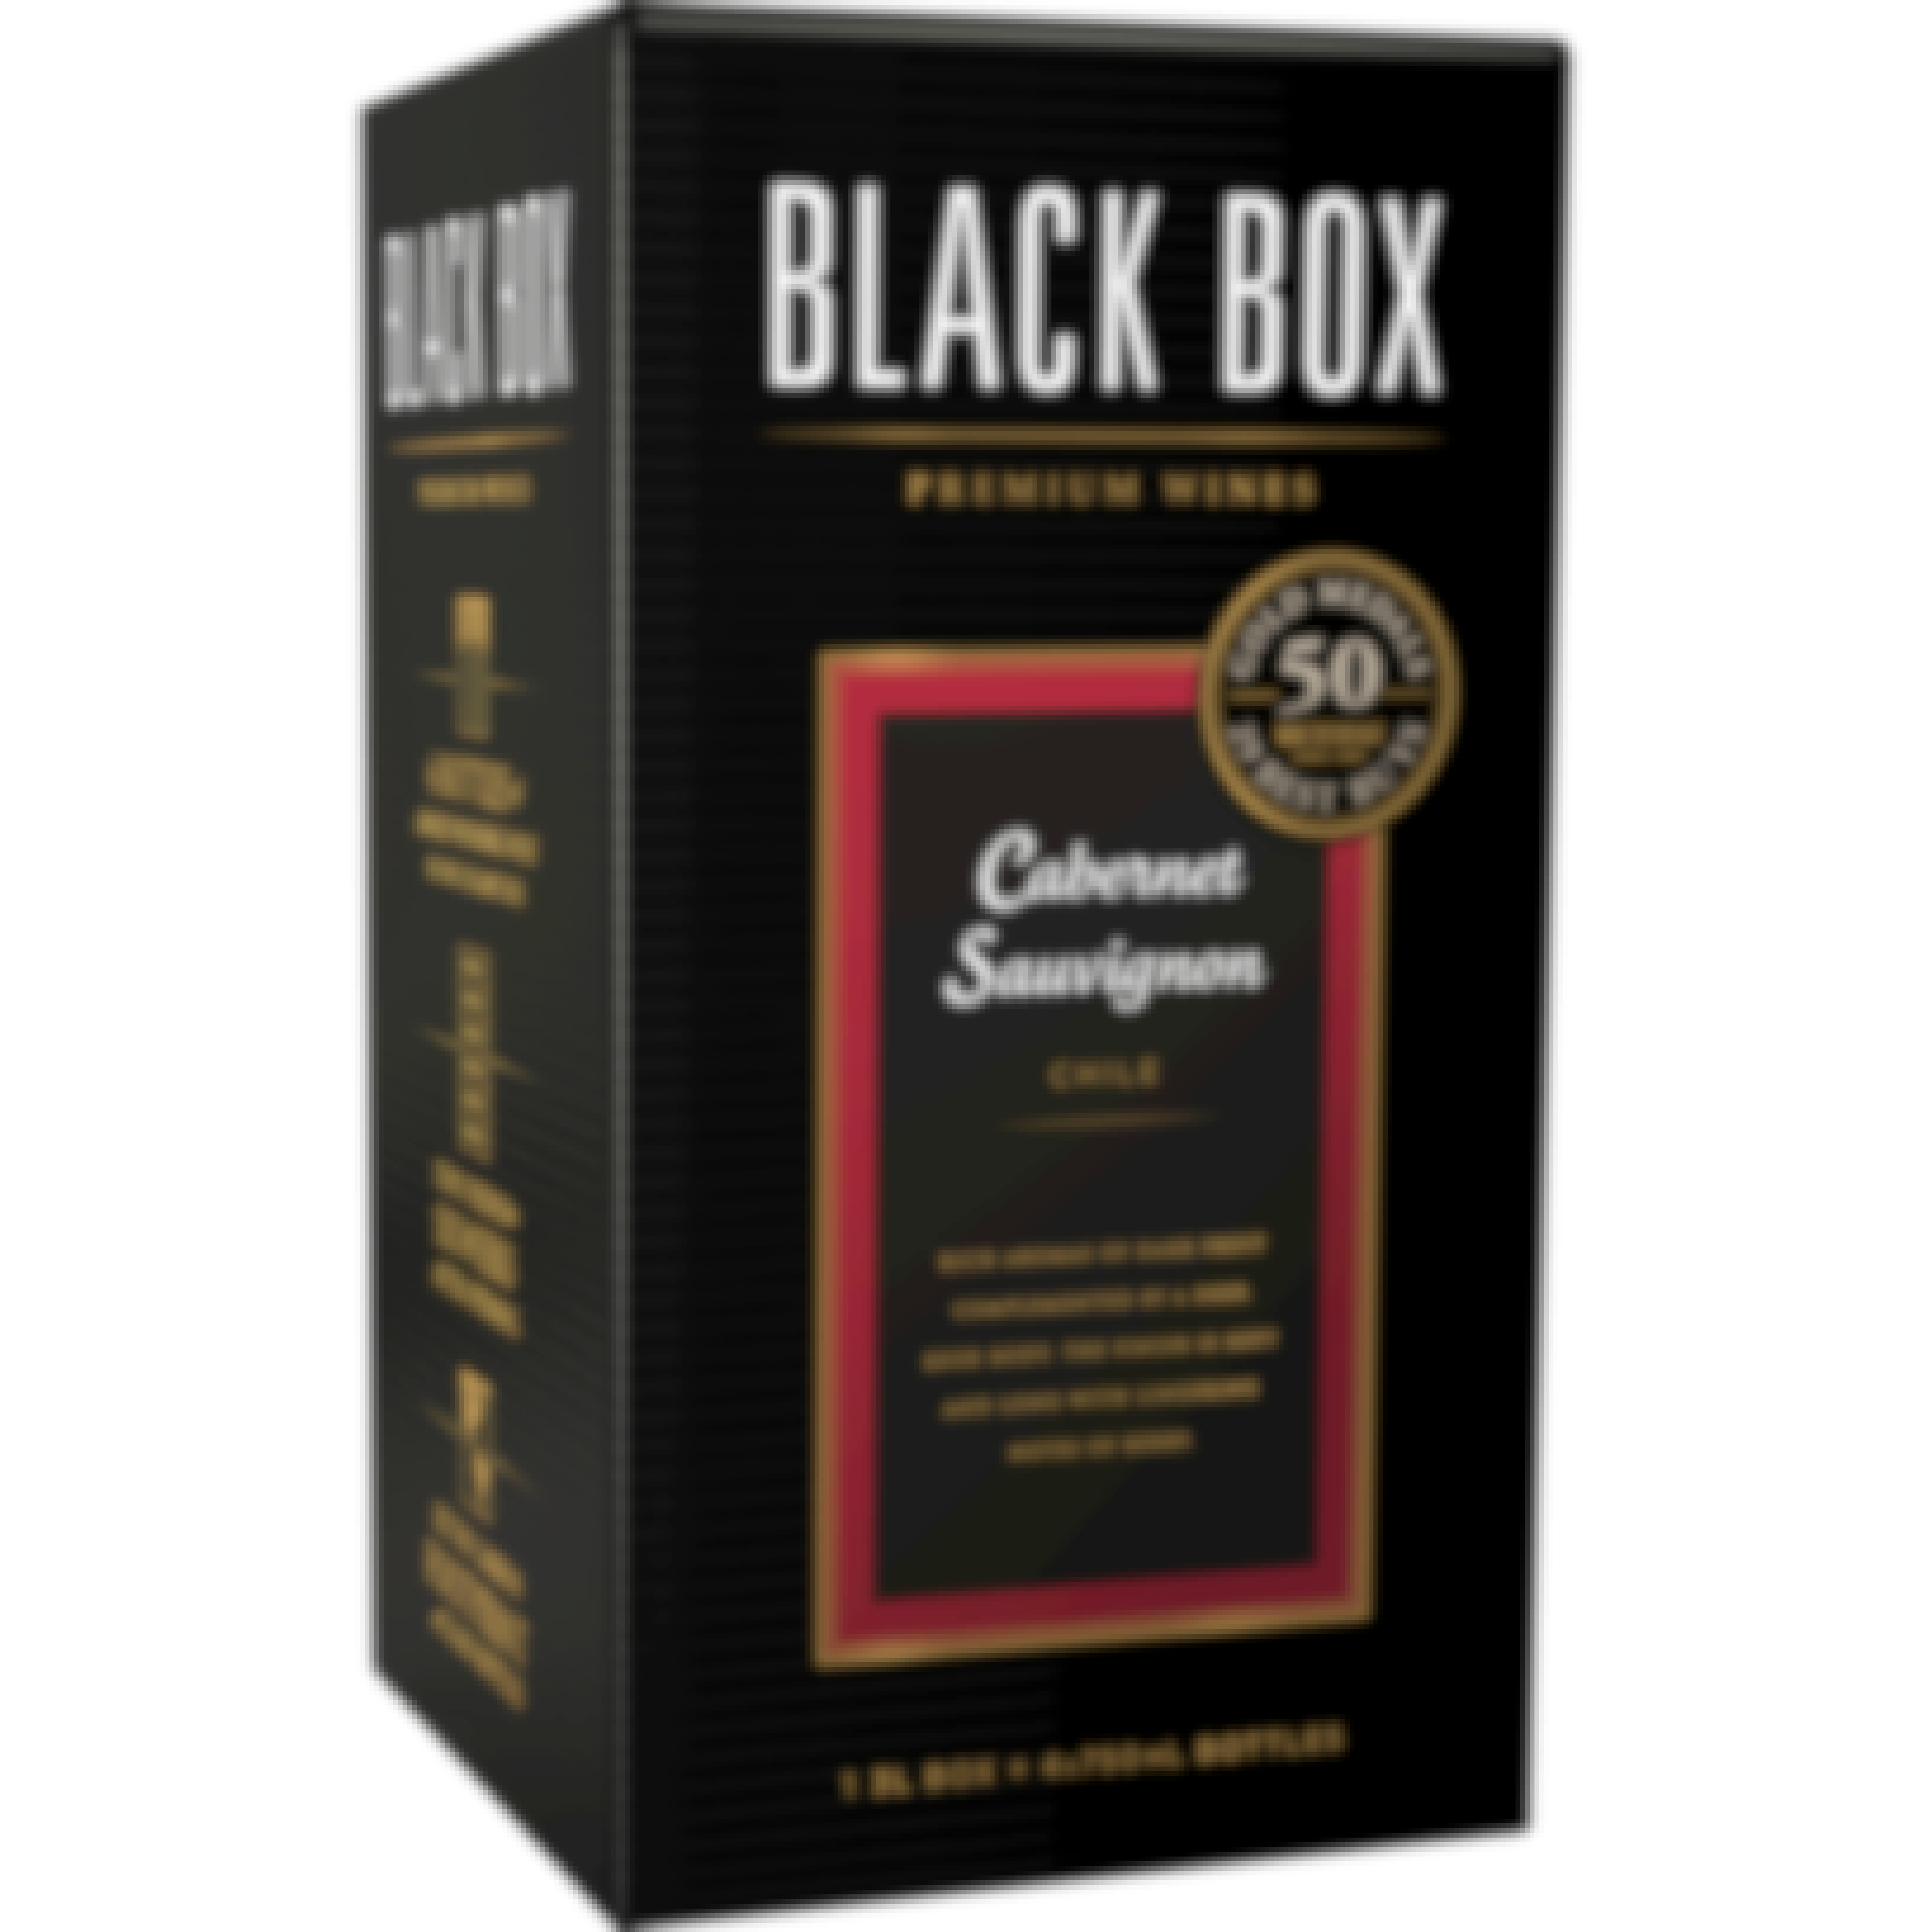 Black Box Cabernet Sauvignon - Kiamie Package Store 3L Box